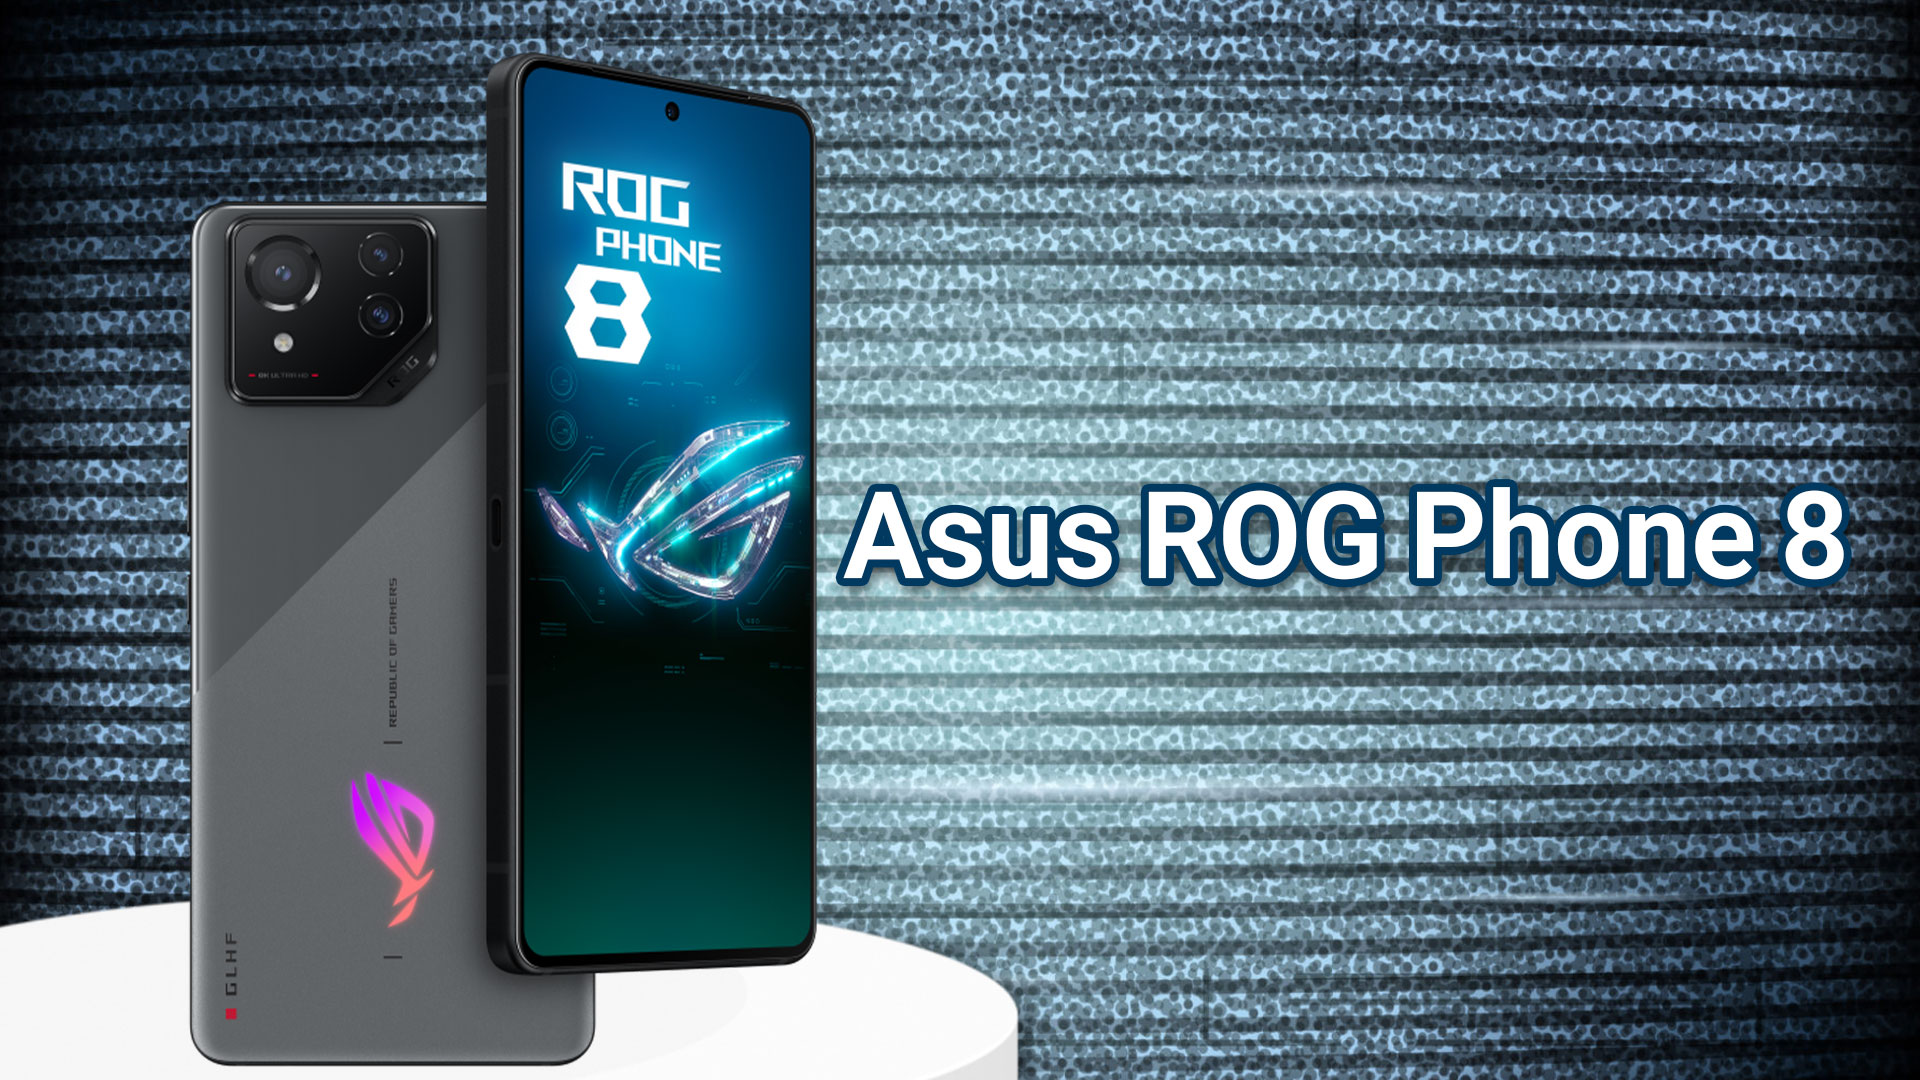 Asus ROG Phone 8 